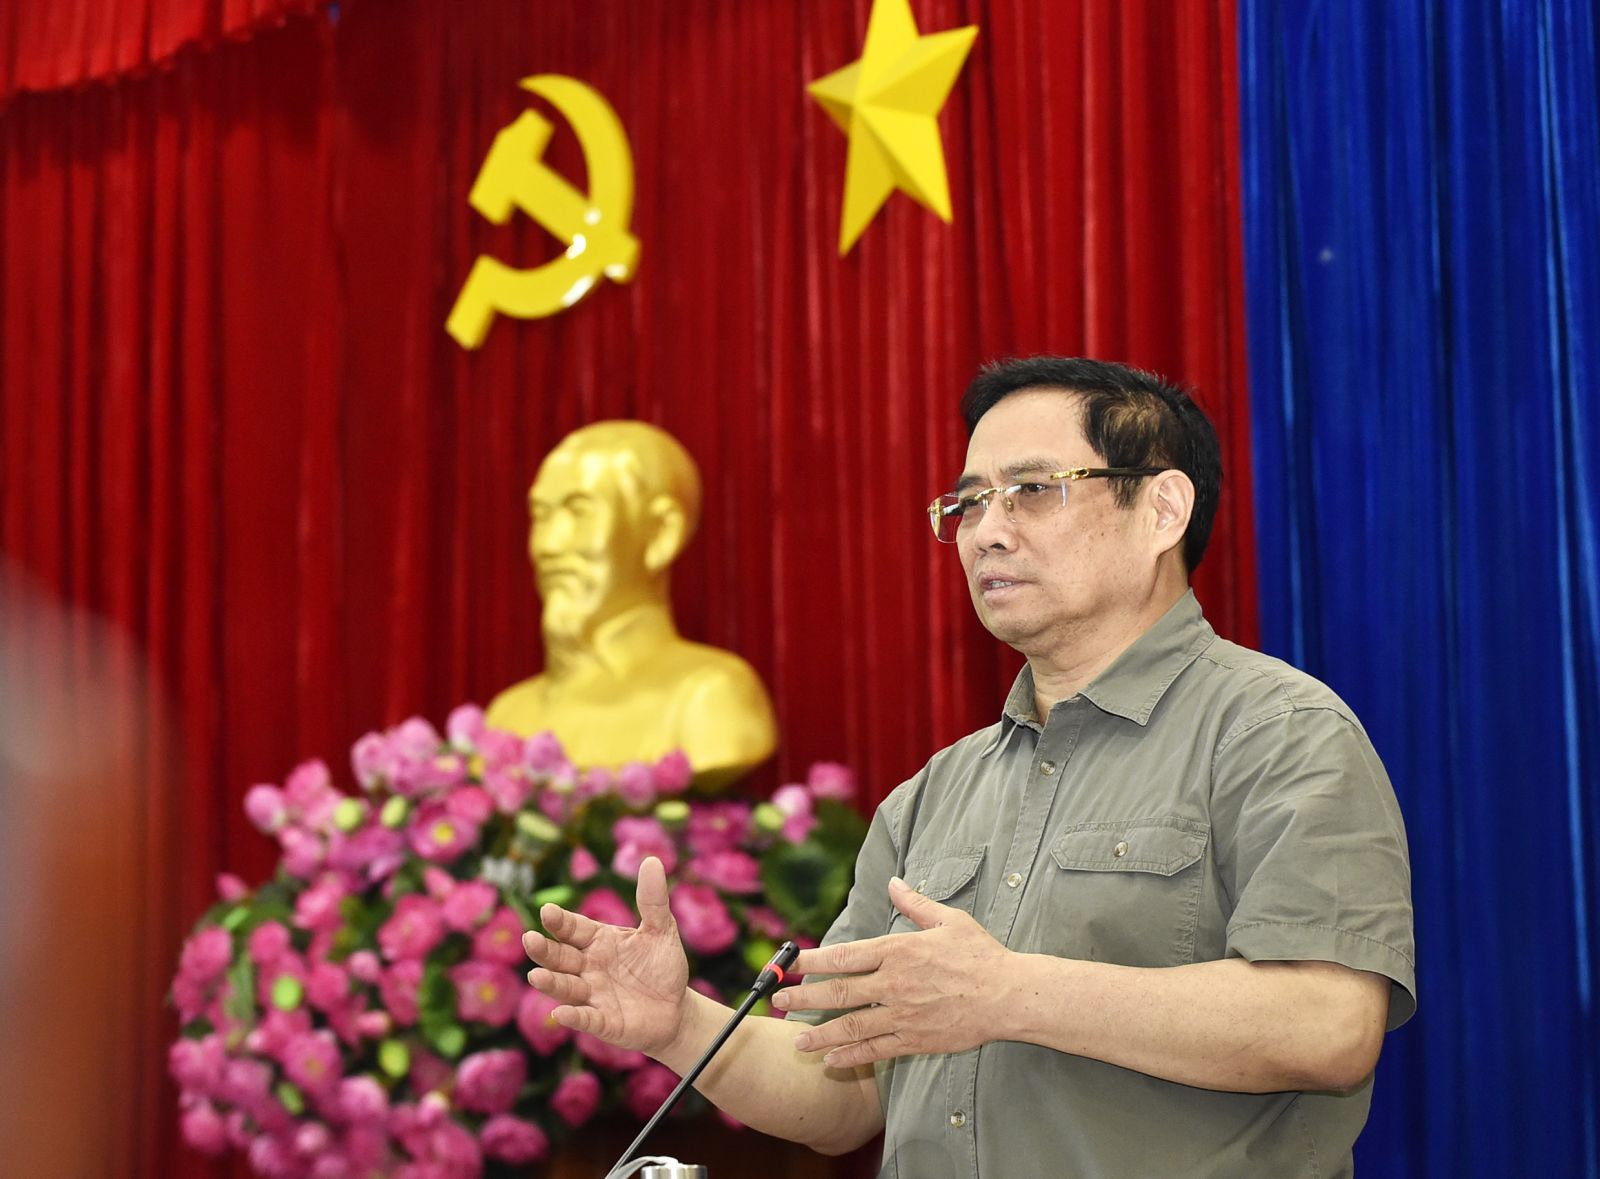 Thủ tướng Phạm Minh Chính: Bình Dương là một địa bàn trọng điểm được Chính phủ quan tâm trong việc phòng chống dịch, phát triển kinh tế - xã hội, bảo đảm sức khỏe cho người dân, bảo đảm hiệu quả.